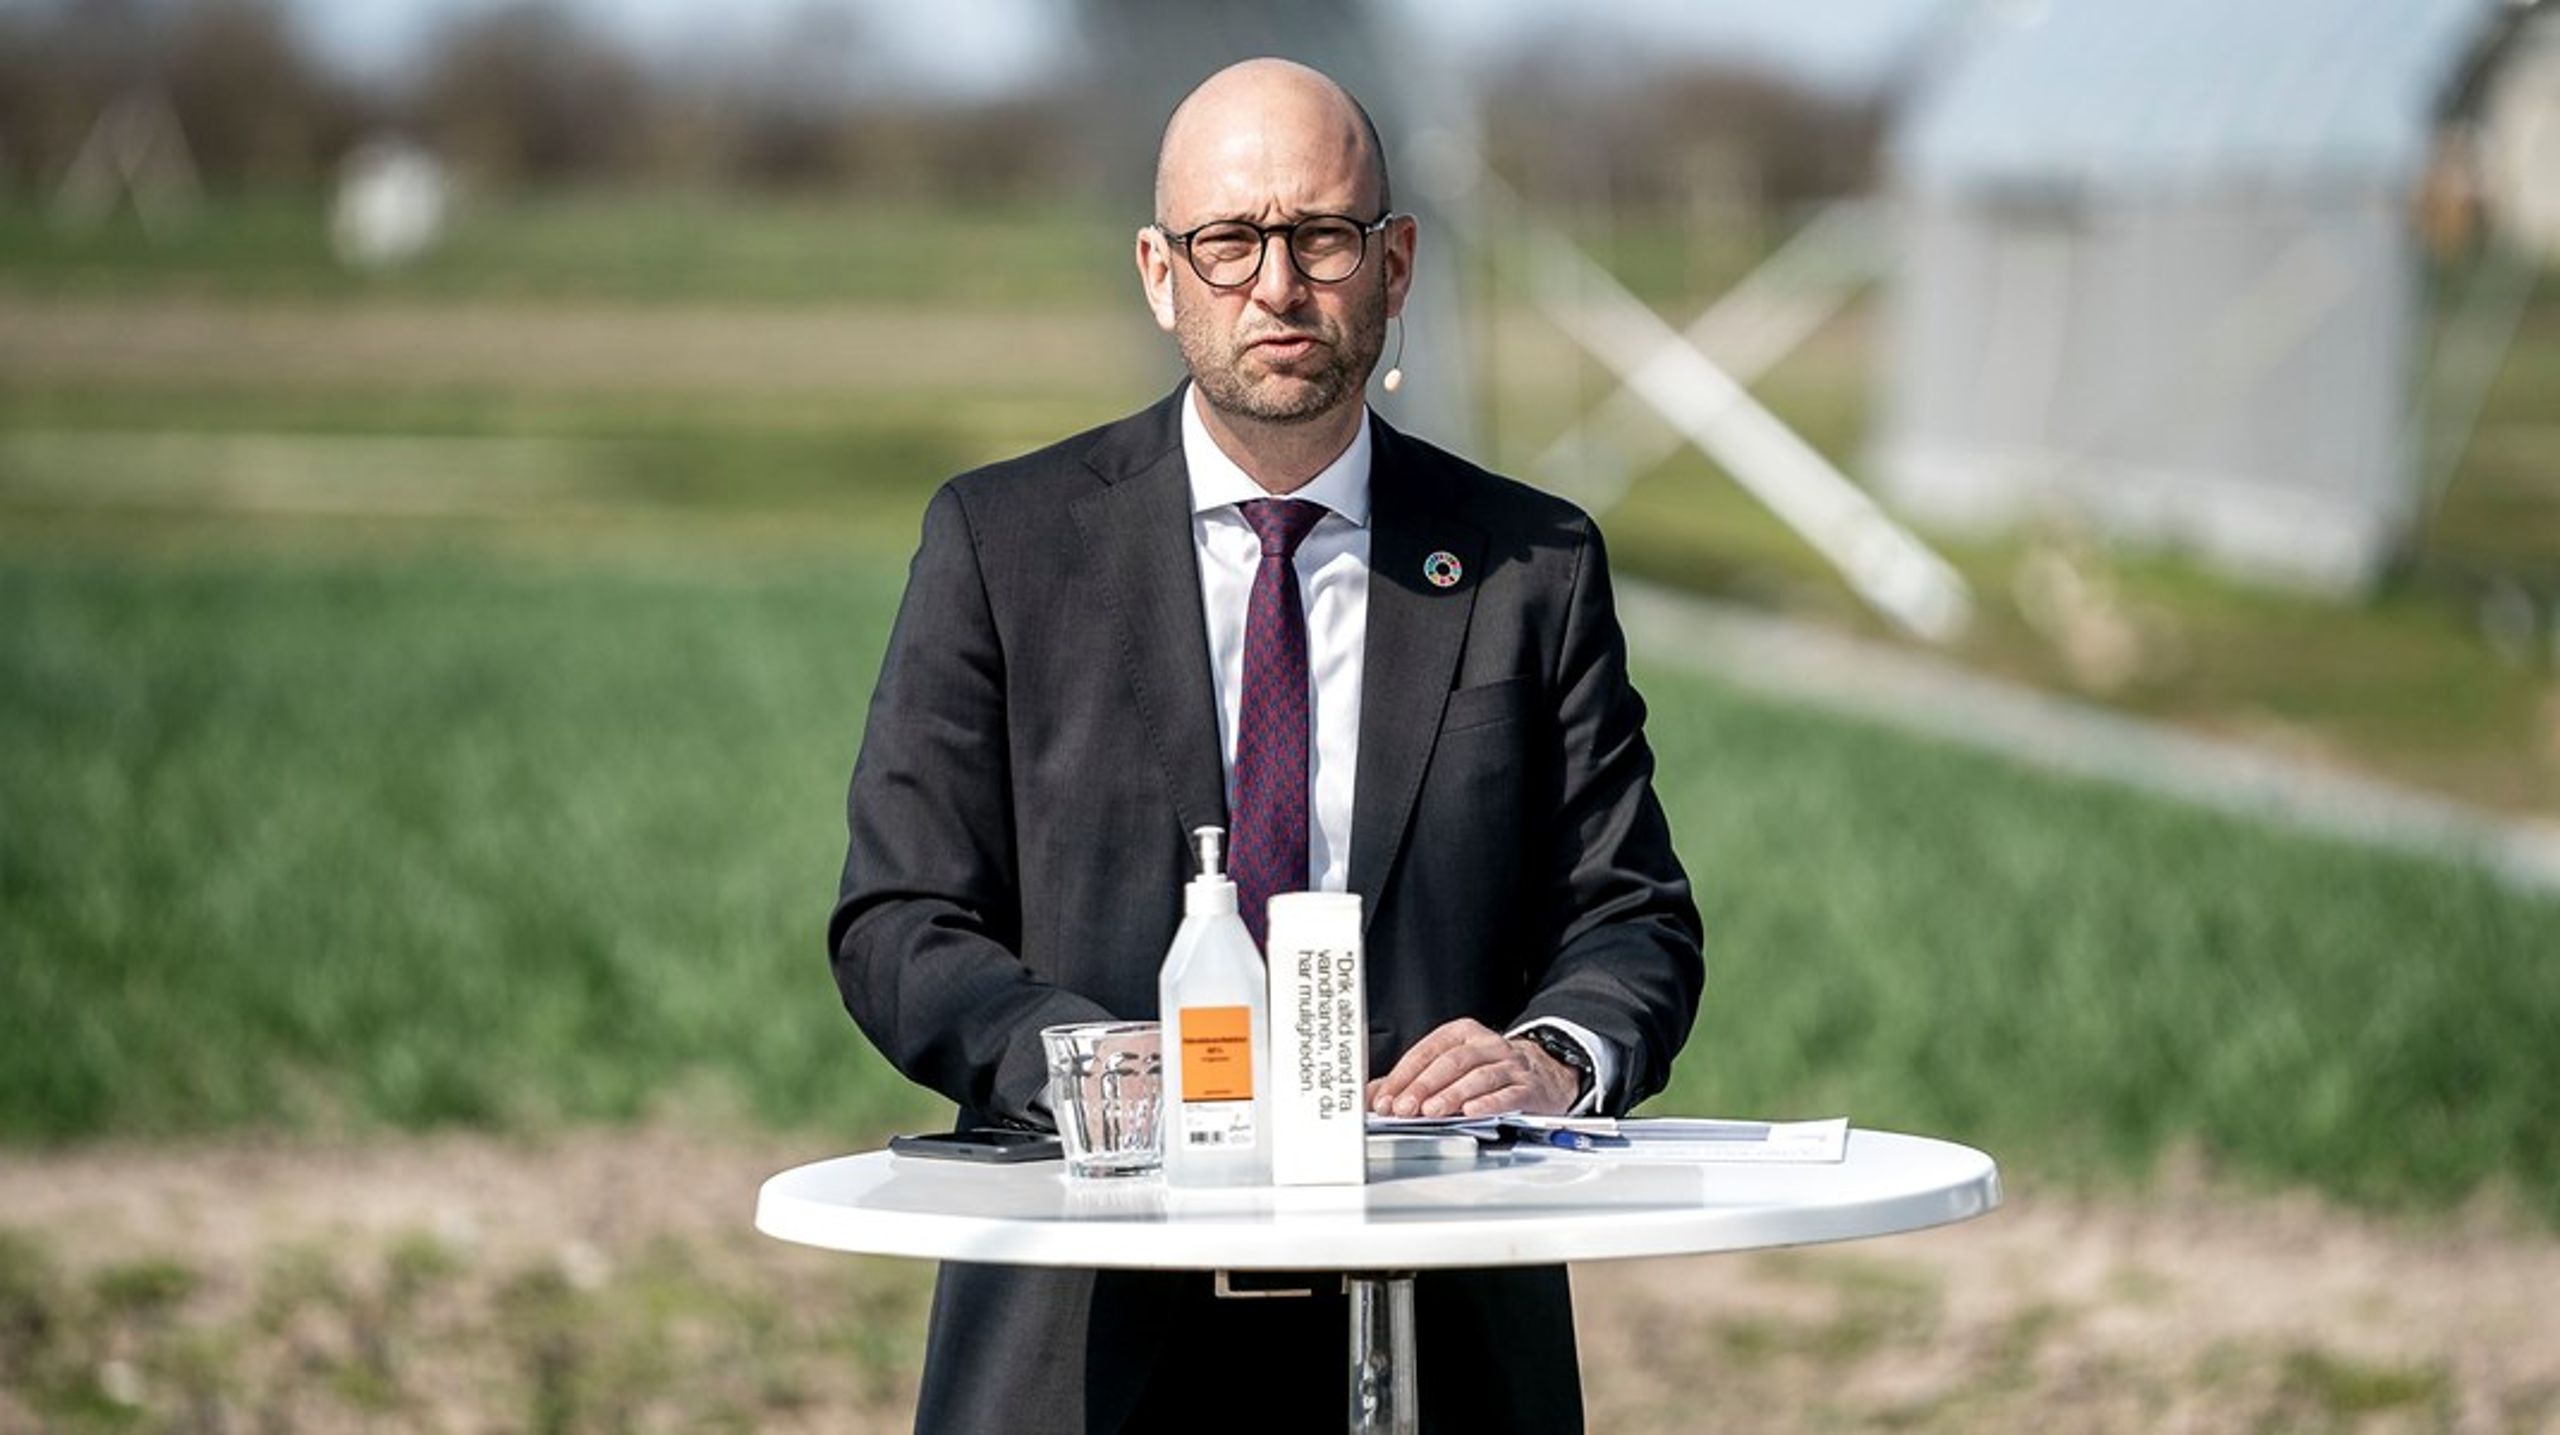 Tirsdag fortsatte landbrugsforhandlingerne hos fødevareminister Rasmus Prehn. Står det til klimatænketanken Concito bør der komme flere forslag til konkrete CO2-reduktioner på forhandlingsbordet.&nbsp;